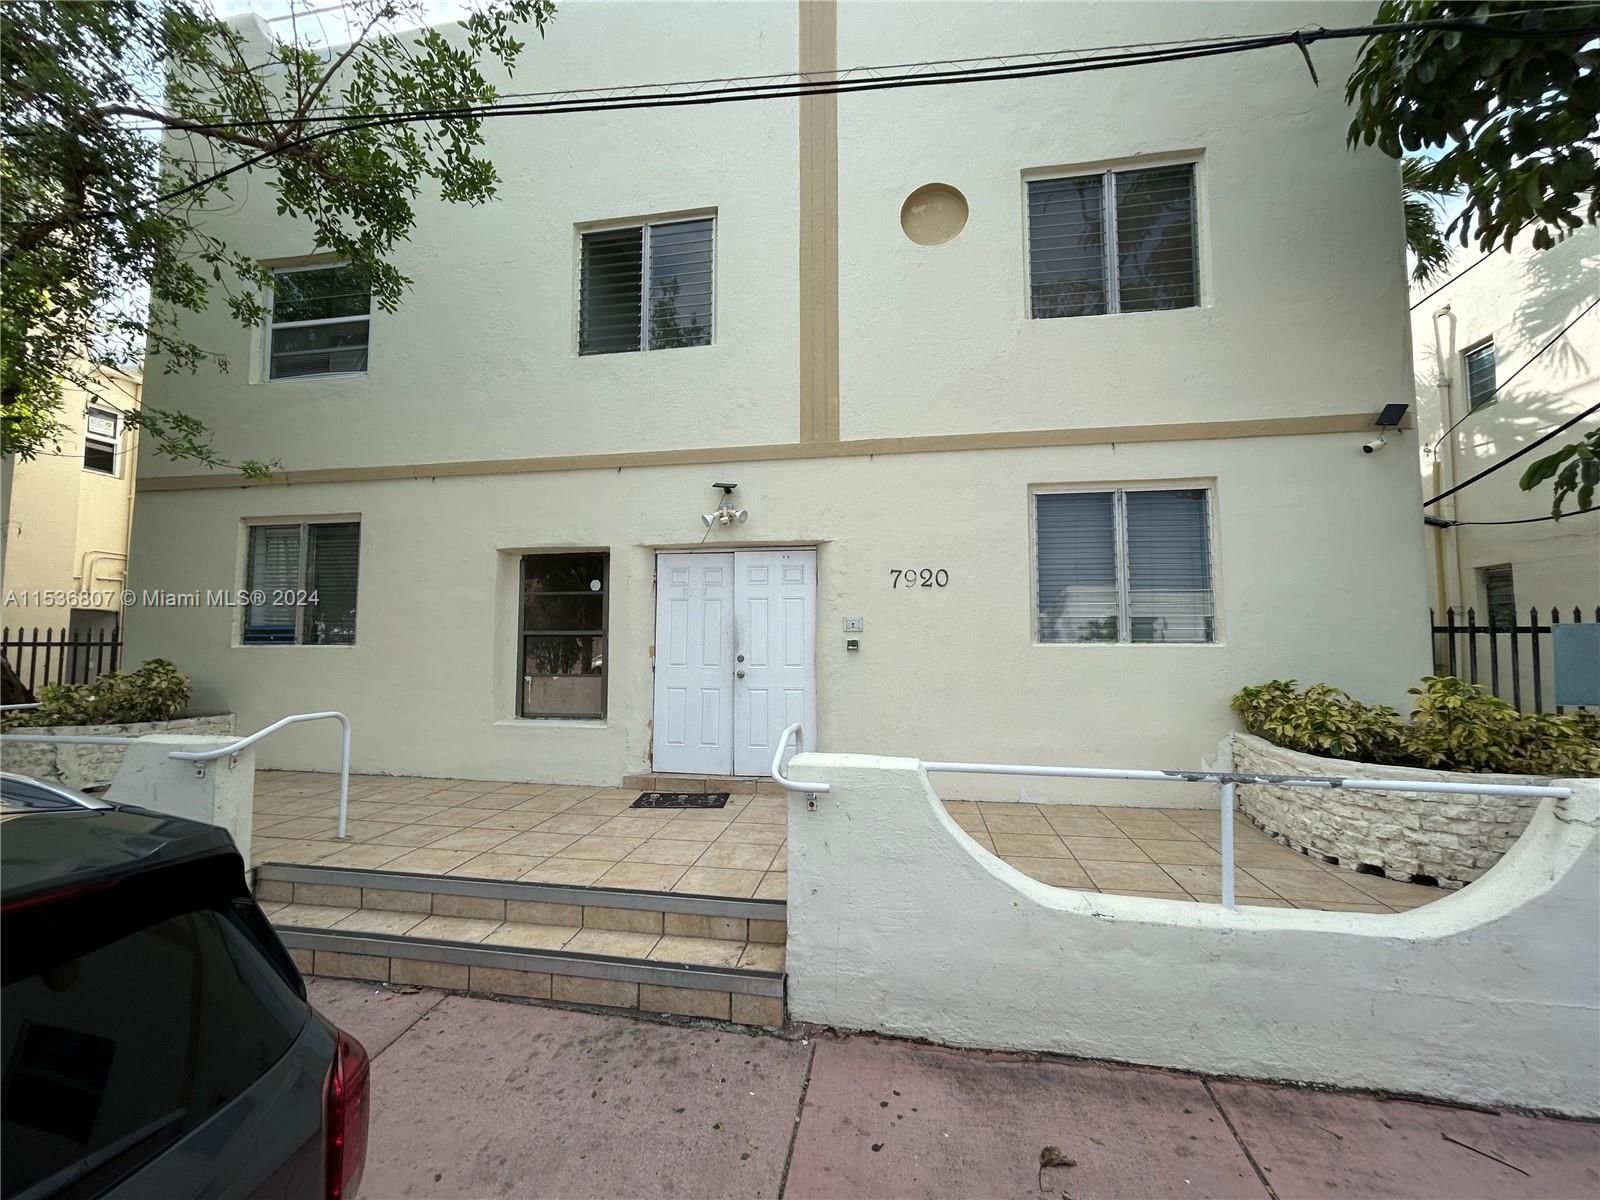 Real estate property located at 7920 Harding Ave #6, Miami-Dade County, THE DOVE CONDO, Miami Beach, FL